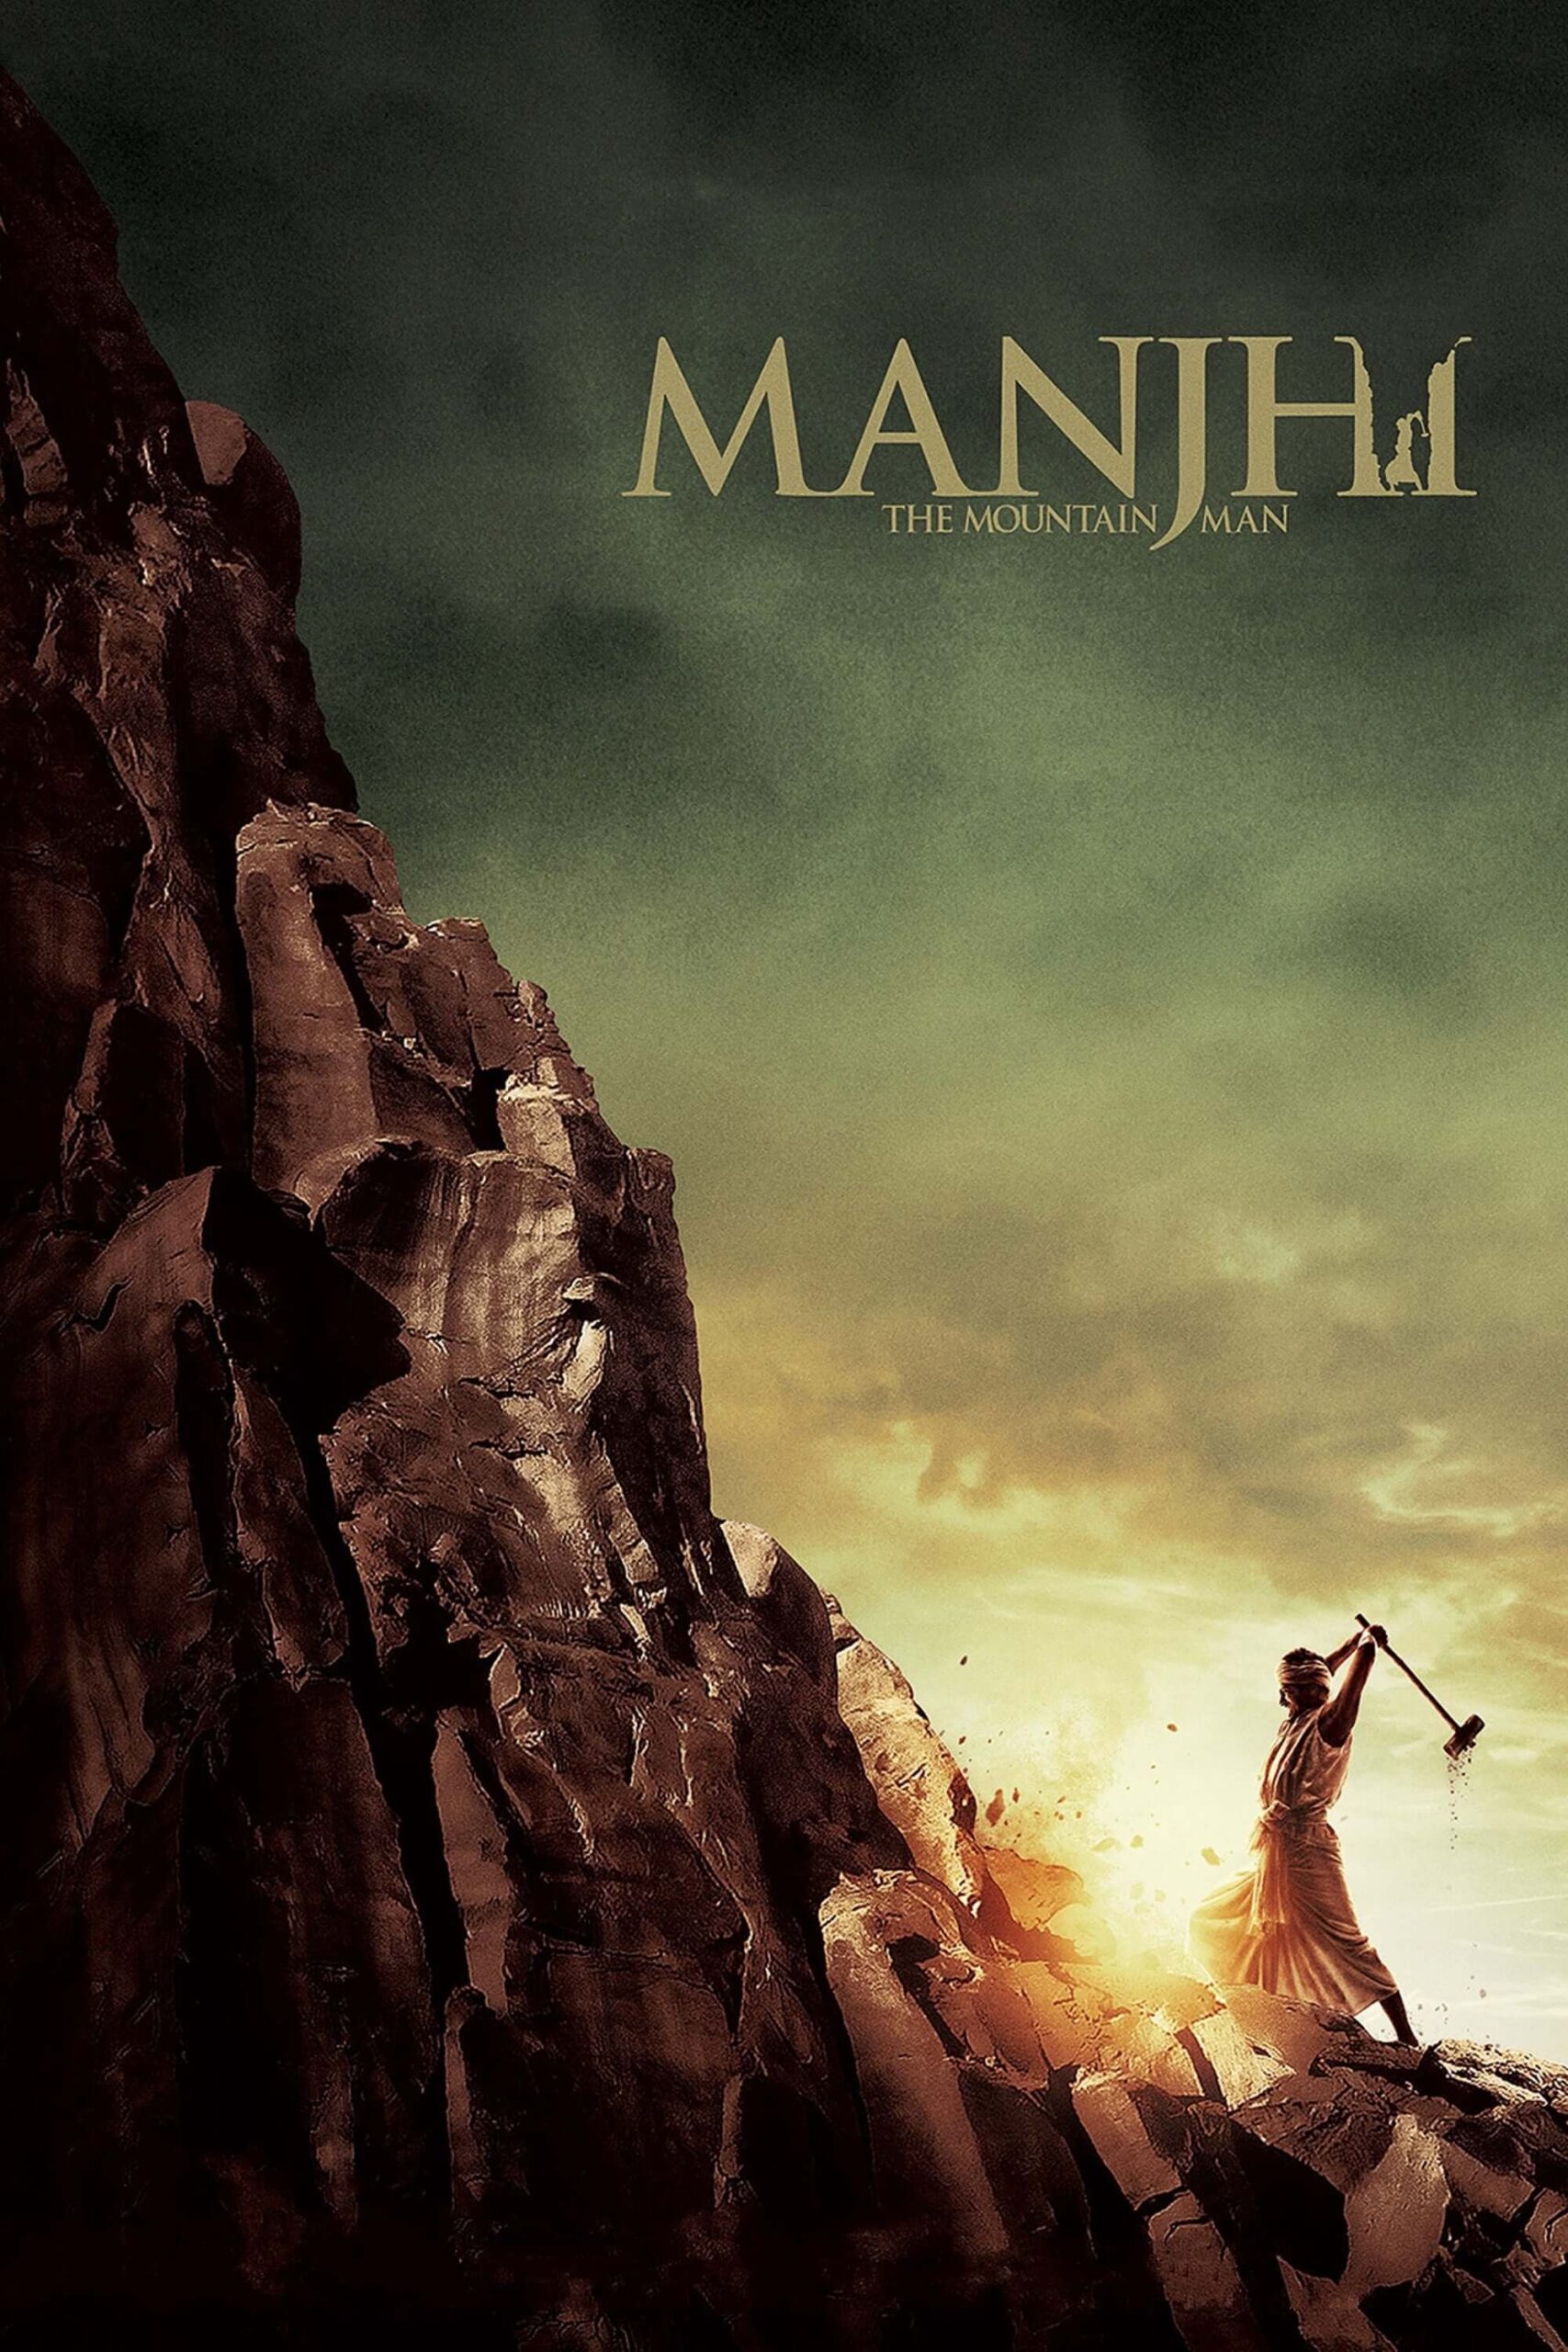 مانجی: مرد کوهستان (Manjhi: The Mountain Man)